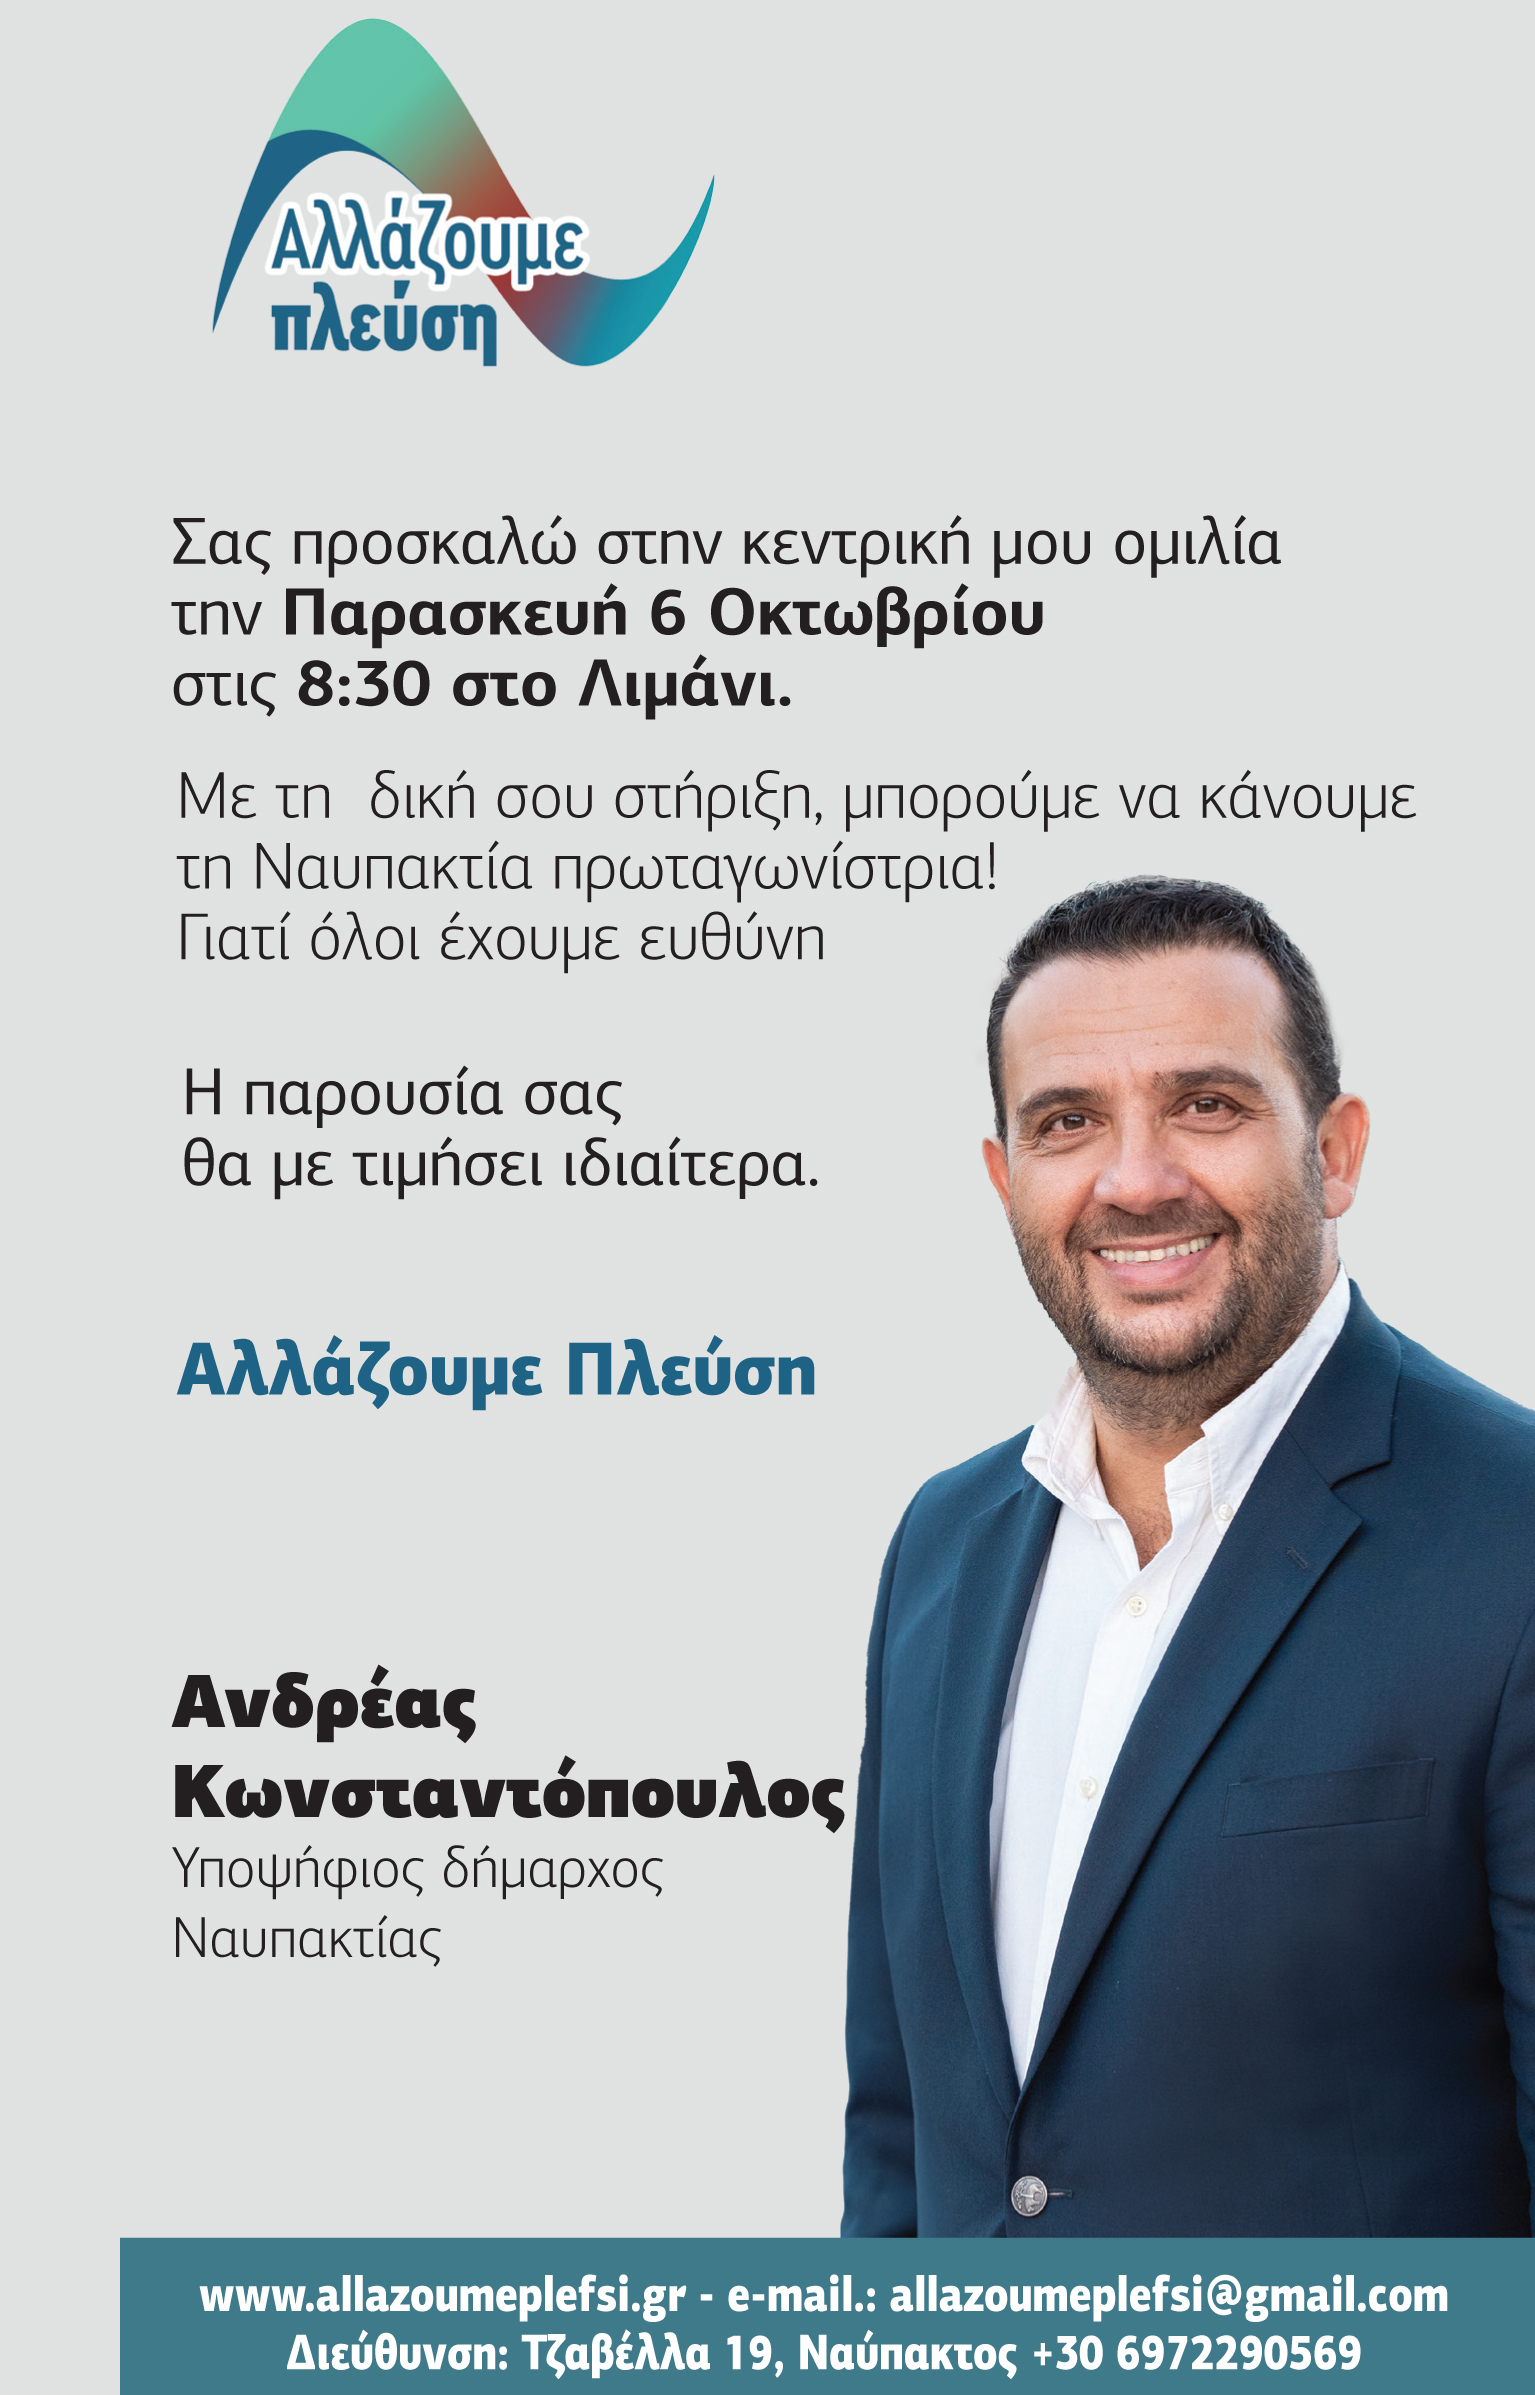 Κεντρική Ομιλία του Υποψήφιου Δημάρχου Ανδρέα Κωνσταντόπουλου 06/10 στις 20:30